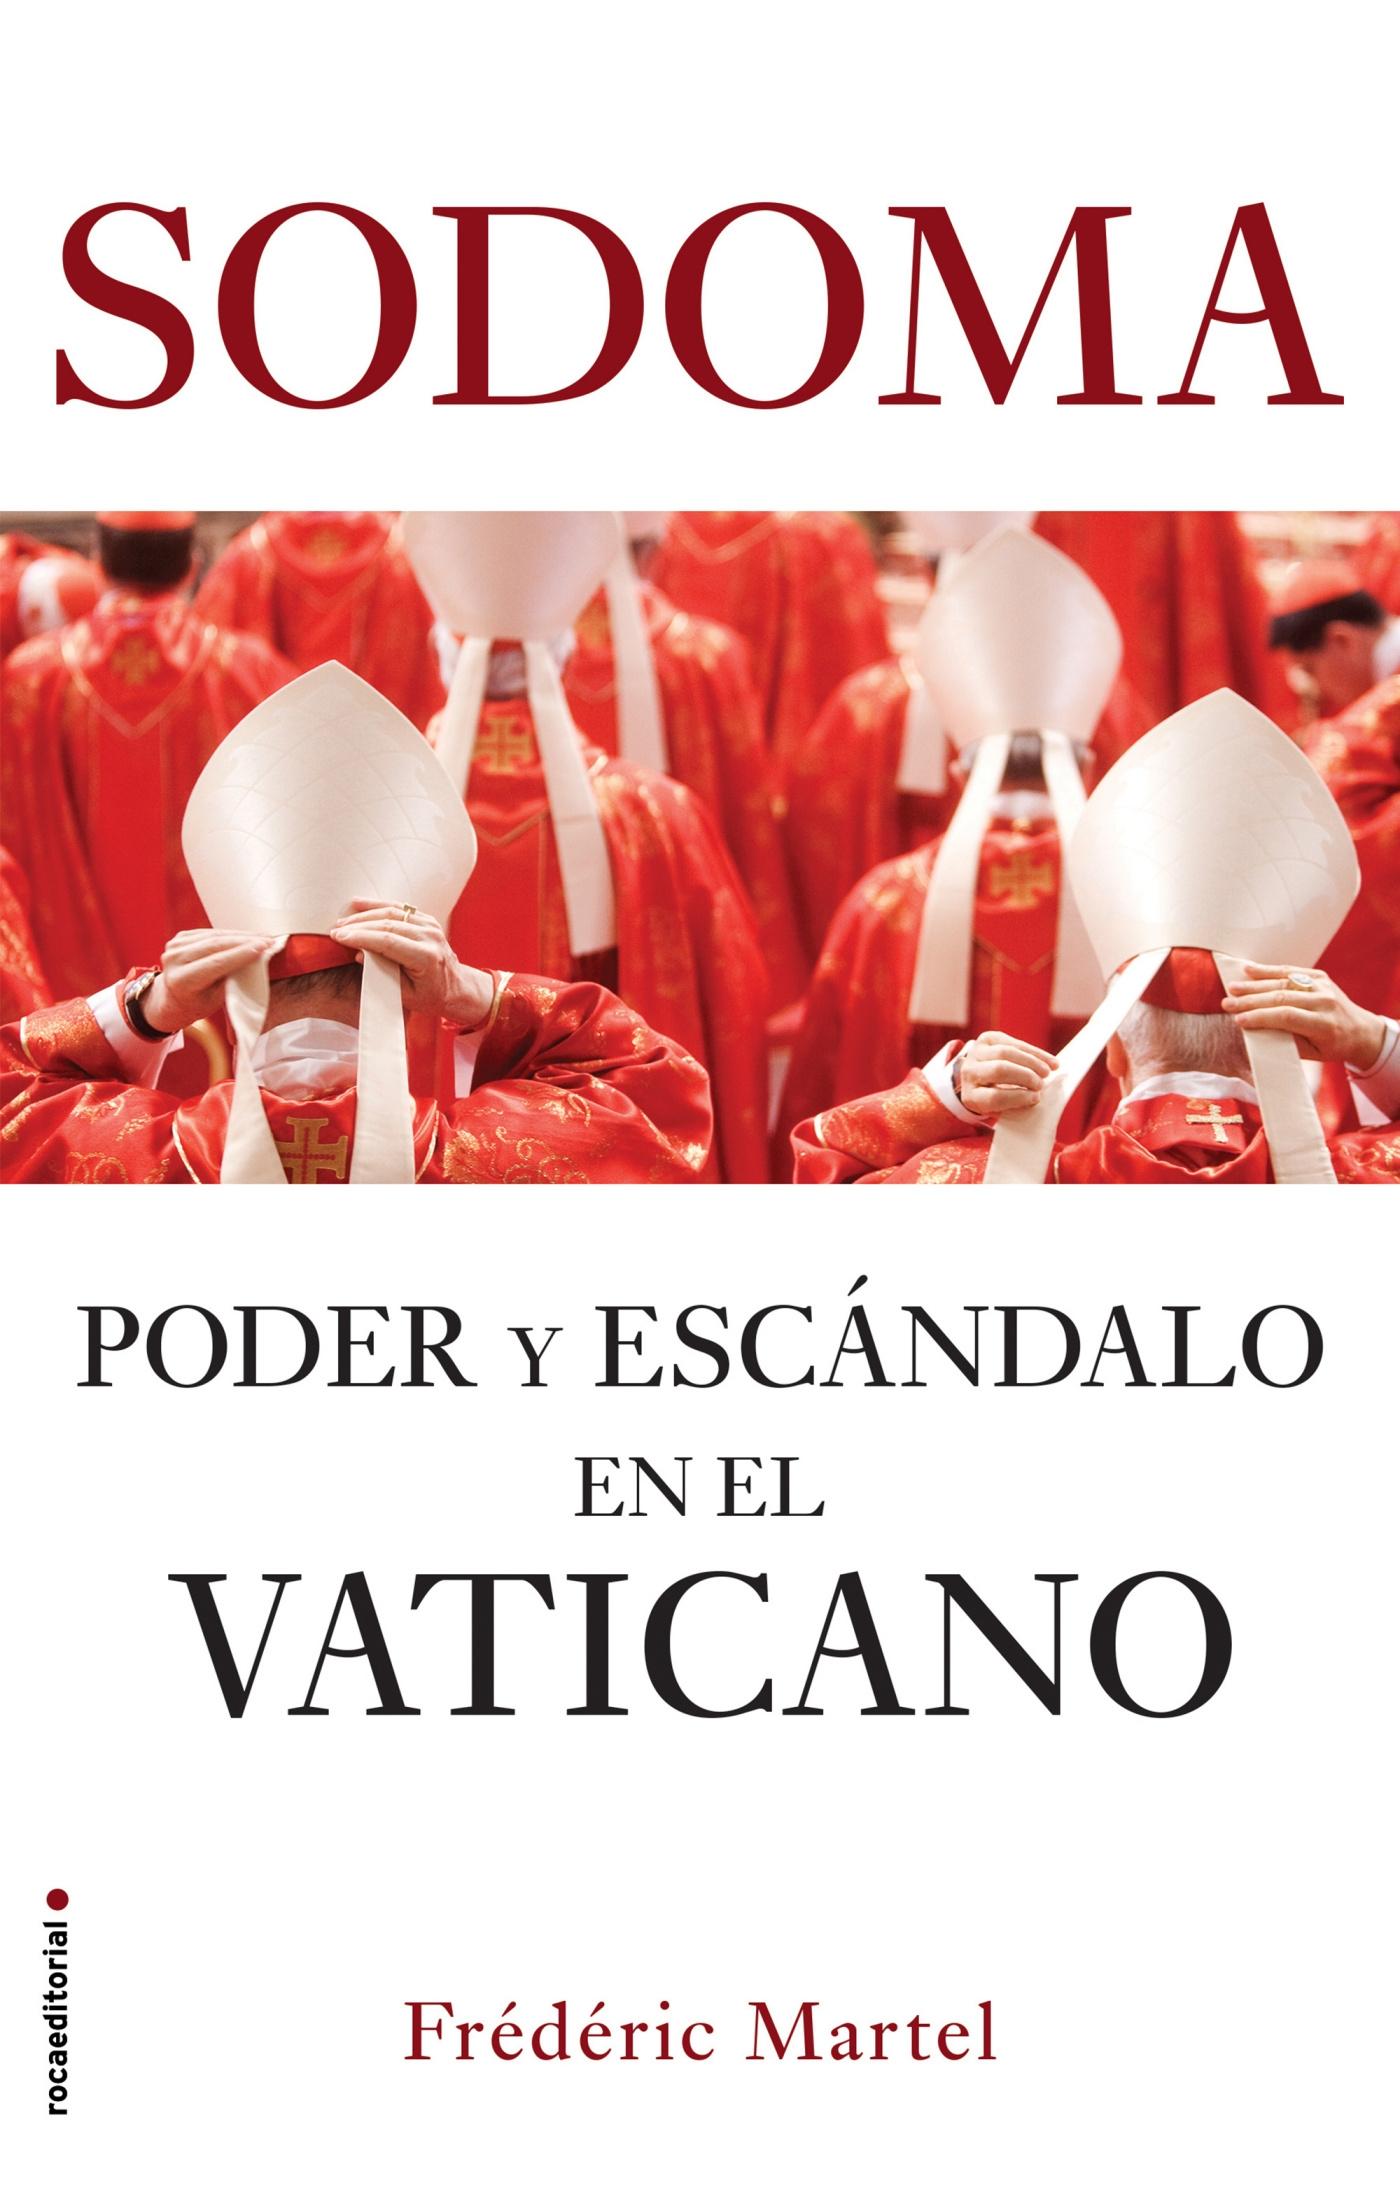 Sodoma "Poder y Escándalo en el Vaticano". 